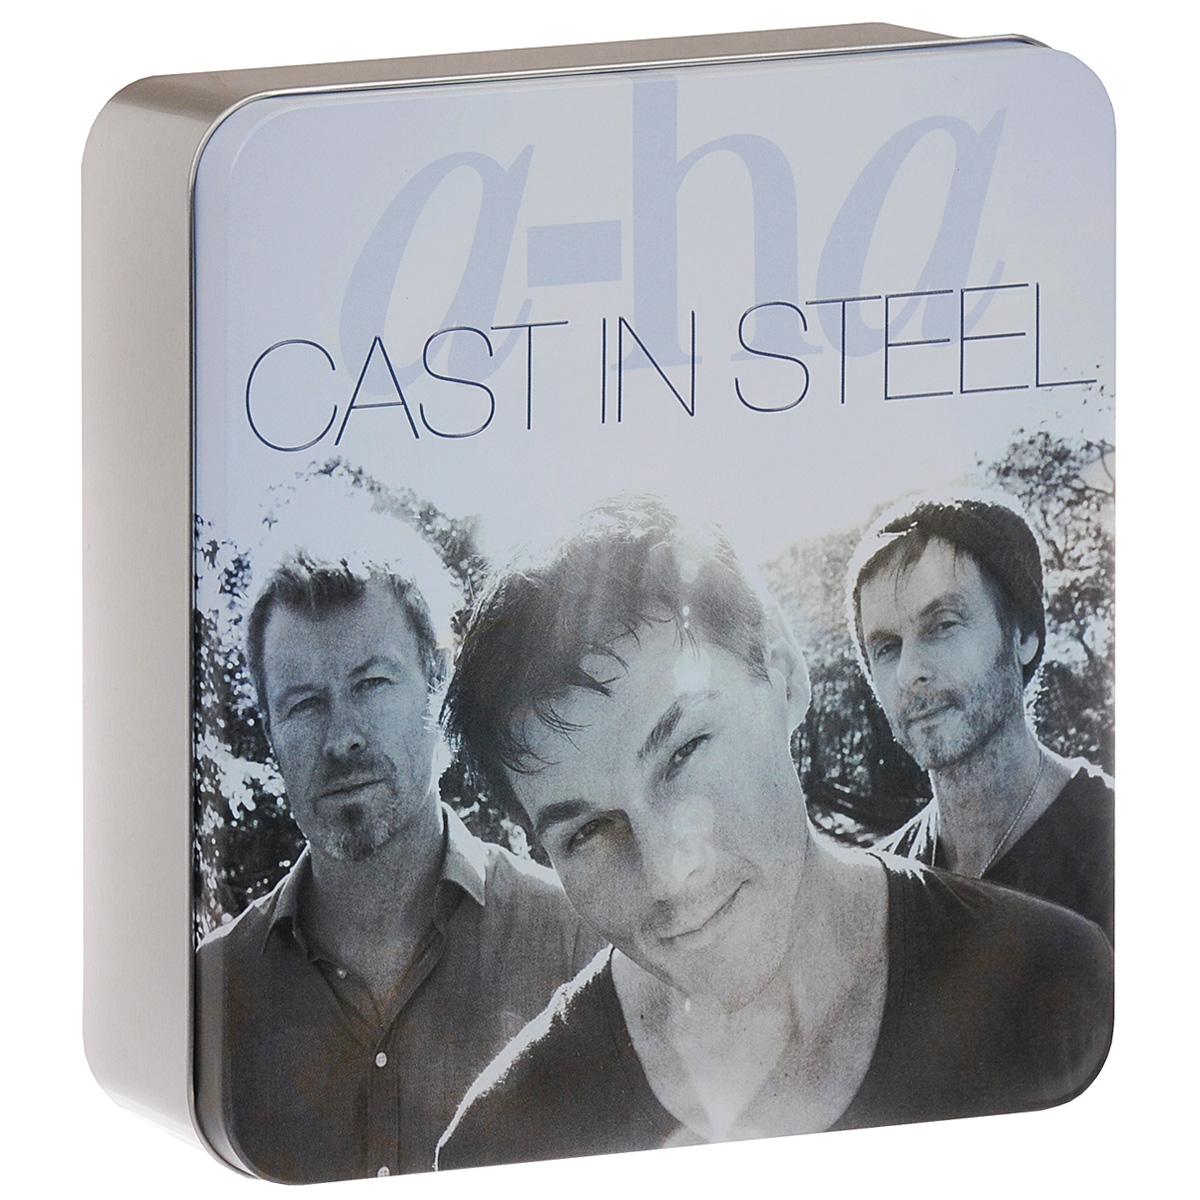 A ha hunting high. A-ha "Cast in Steel - 2cd". A ha Cast in Steel CD диск. A-ha 1988. A-ha - 25 Deluxe Edition DVD.